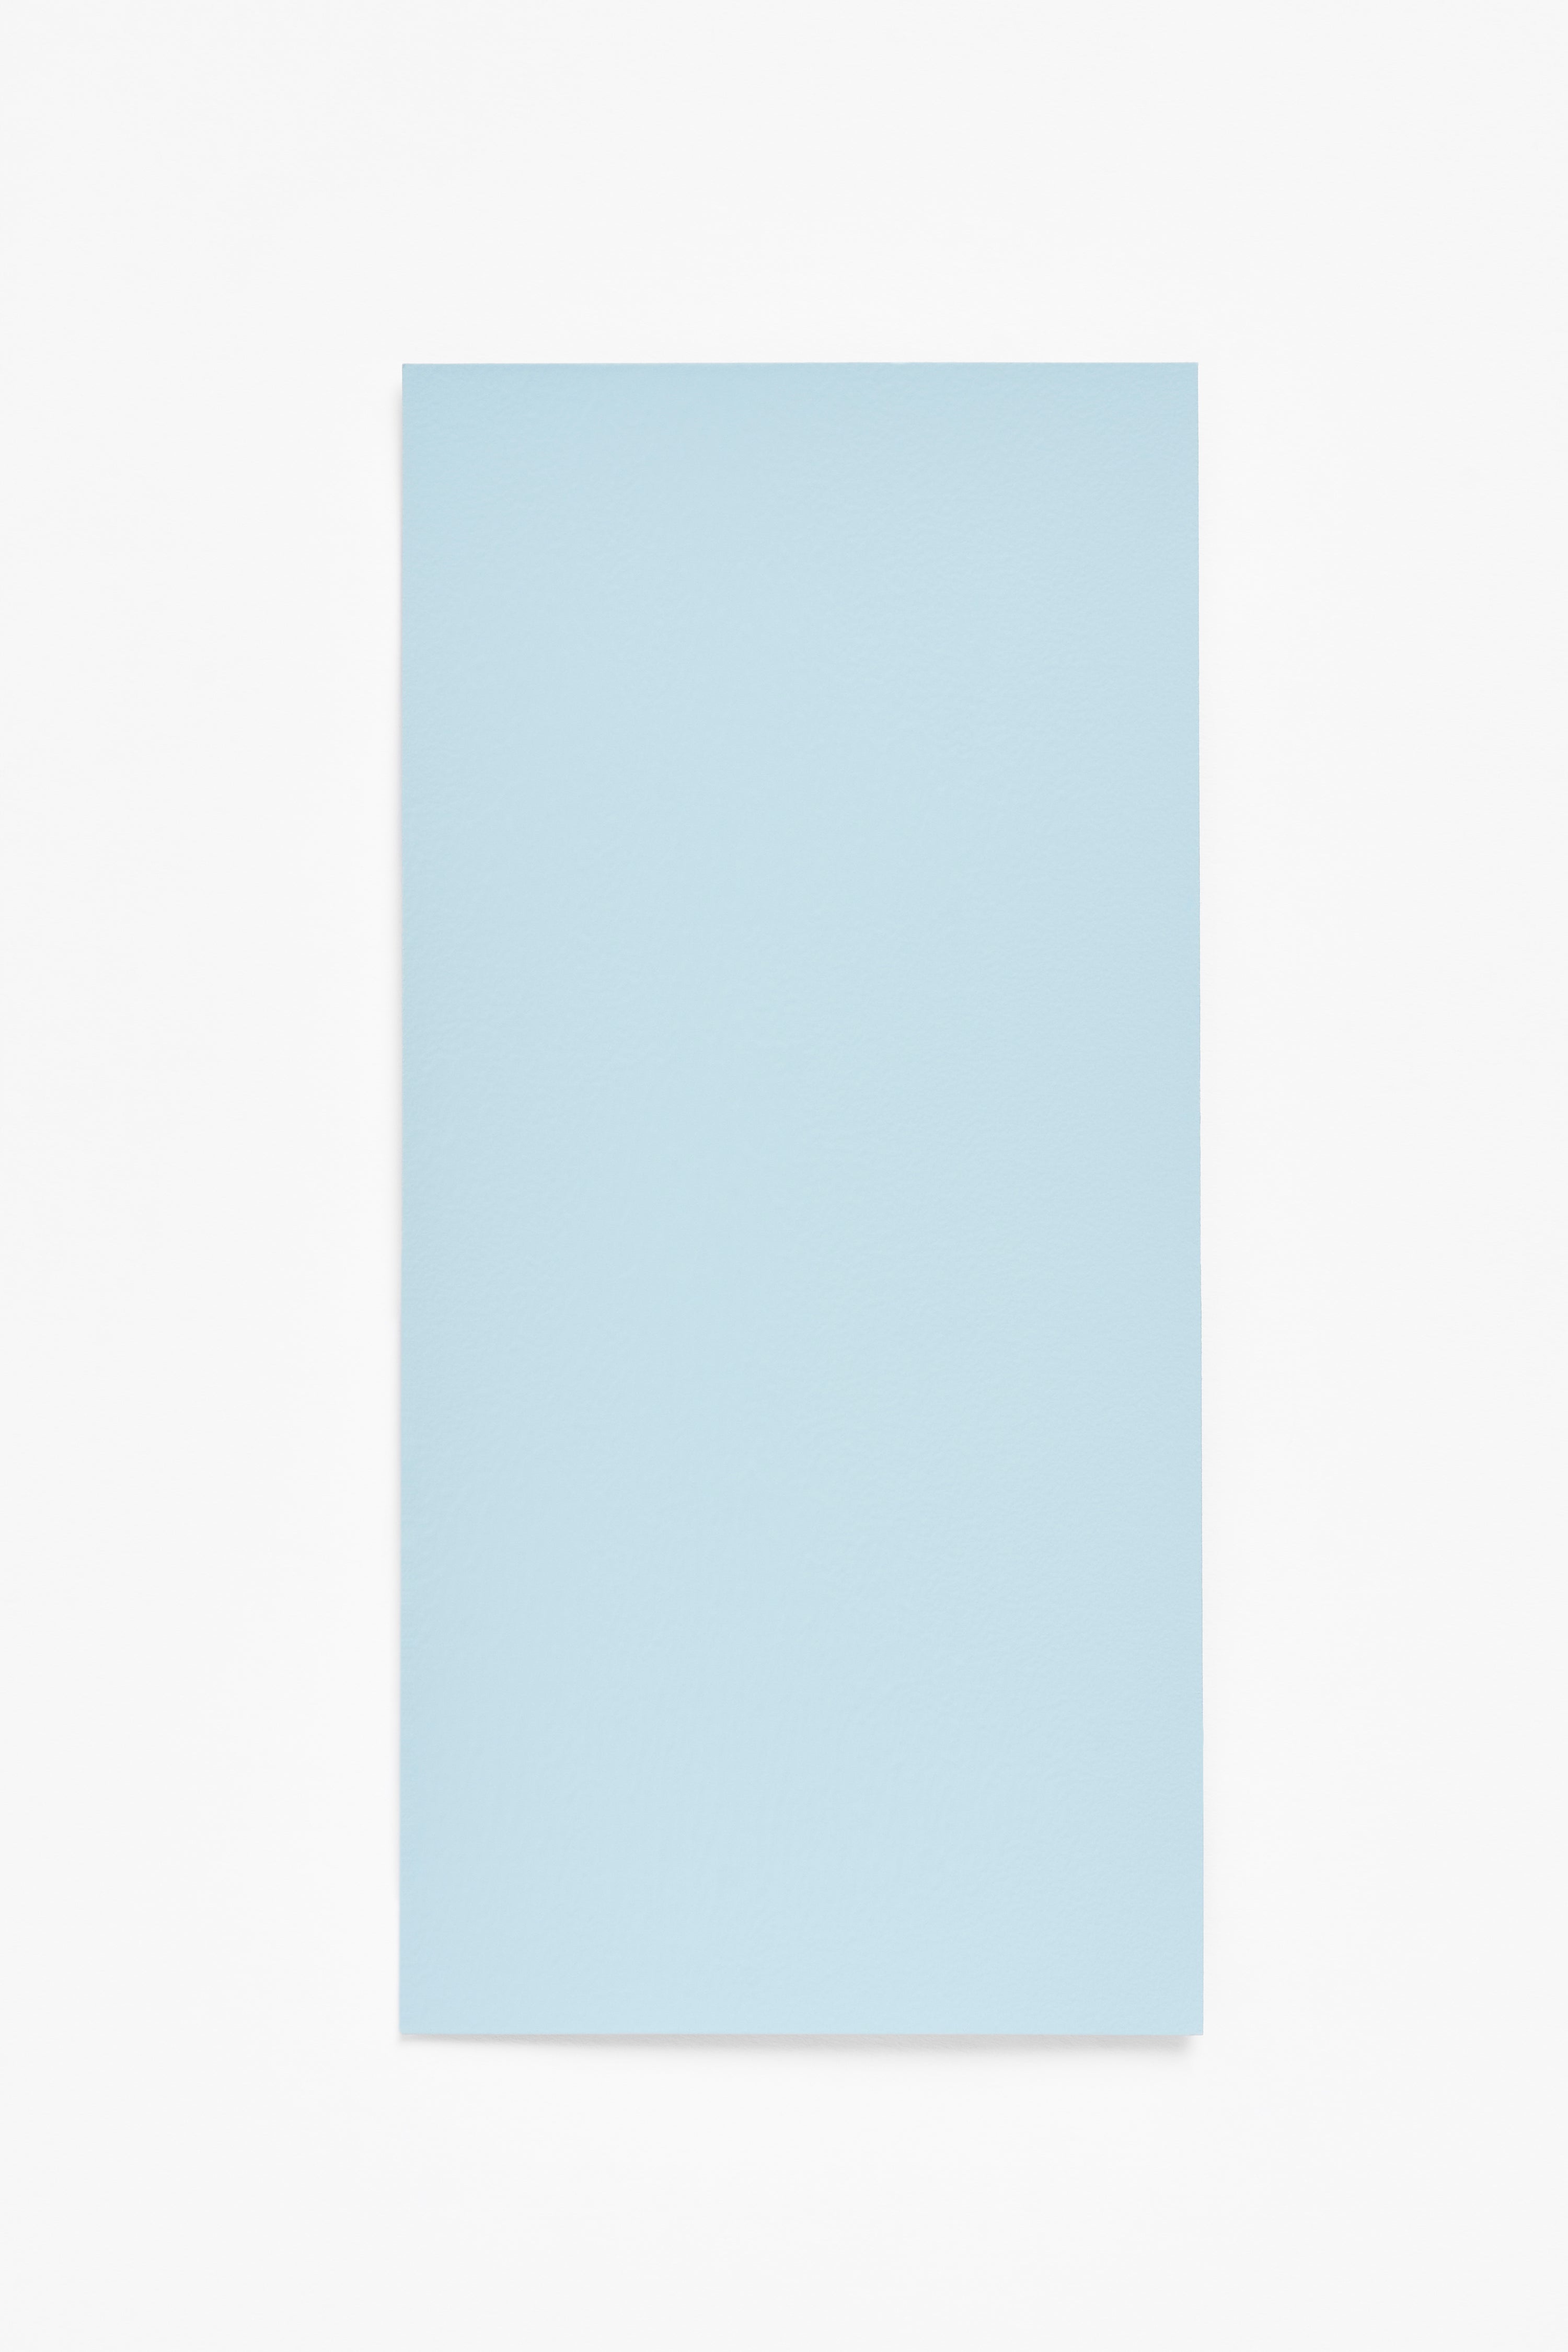 Azul — a paint colour developed by Studio Stefan Scholten for Blēo